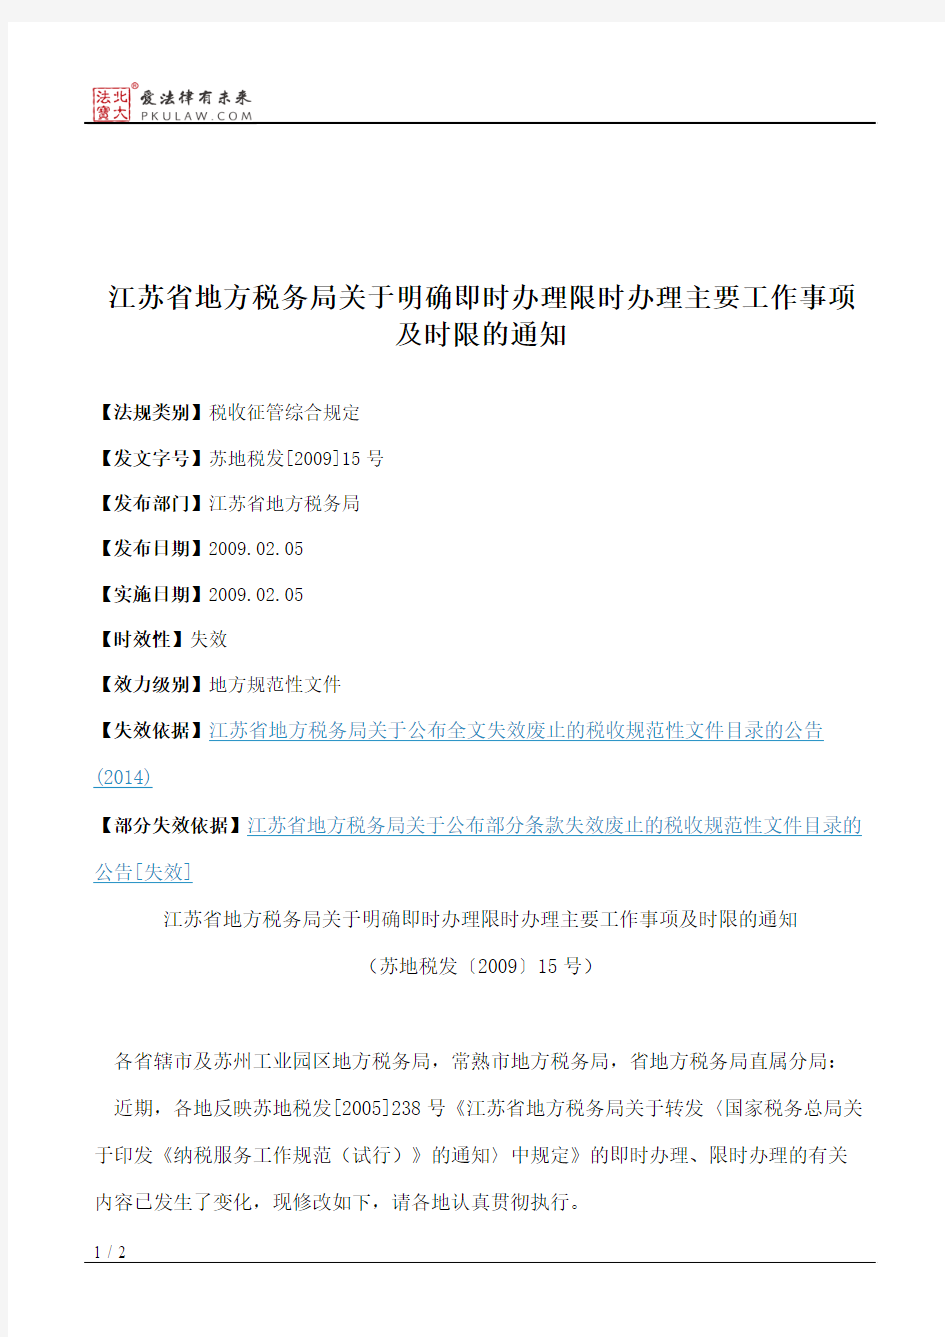 江苏省地方税务局关于明确即时办理限时办理主要工作事项及时限的通知